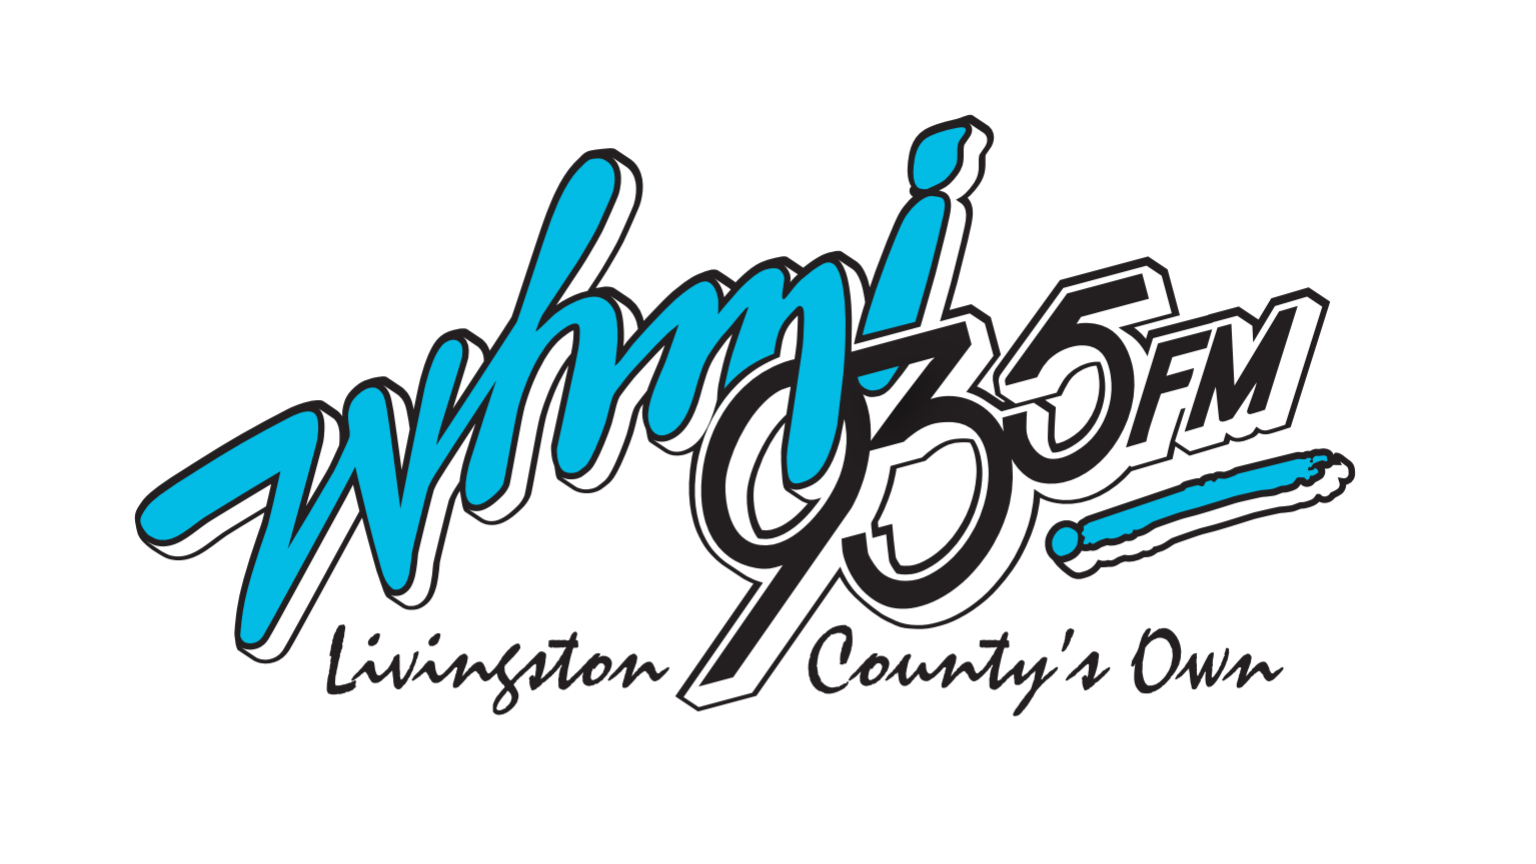 محطة راديو WHMI 93.5 FM – أخبار مقاطعة ليفينغستون ميشيغان، الطقس، حركة المرور، الرياضة، تحديثات المدرسة وأفضل الأغاني الكلاسيكية